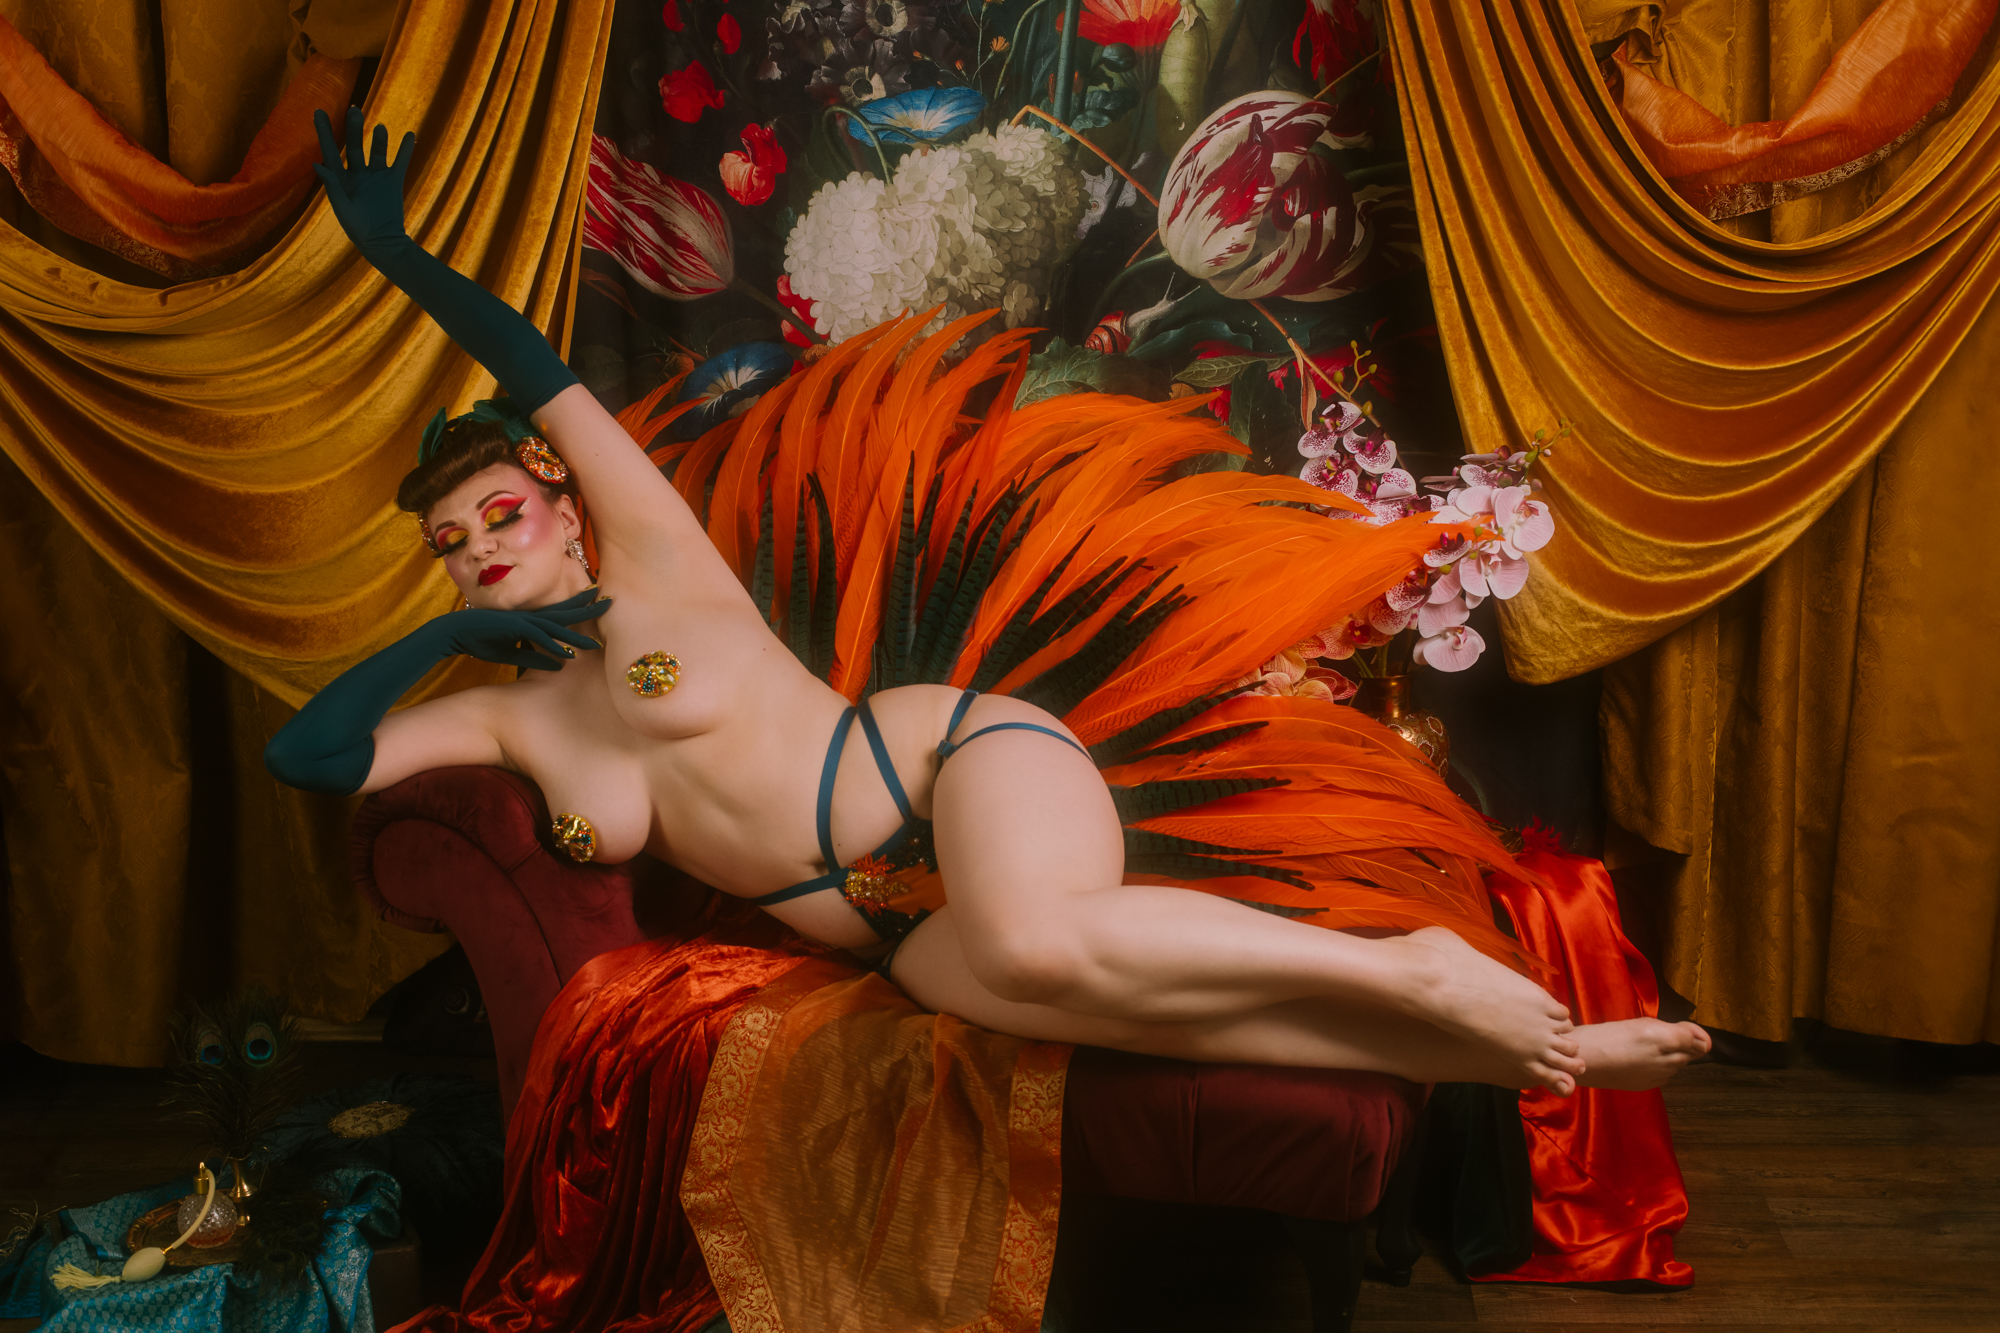 Kobieta o pięknych kształtach wyciąga się leniwie na szezlongu. Wokół niej jest scenografia w pomarańczowym i turkusowym kolorze.